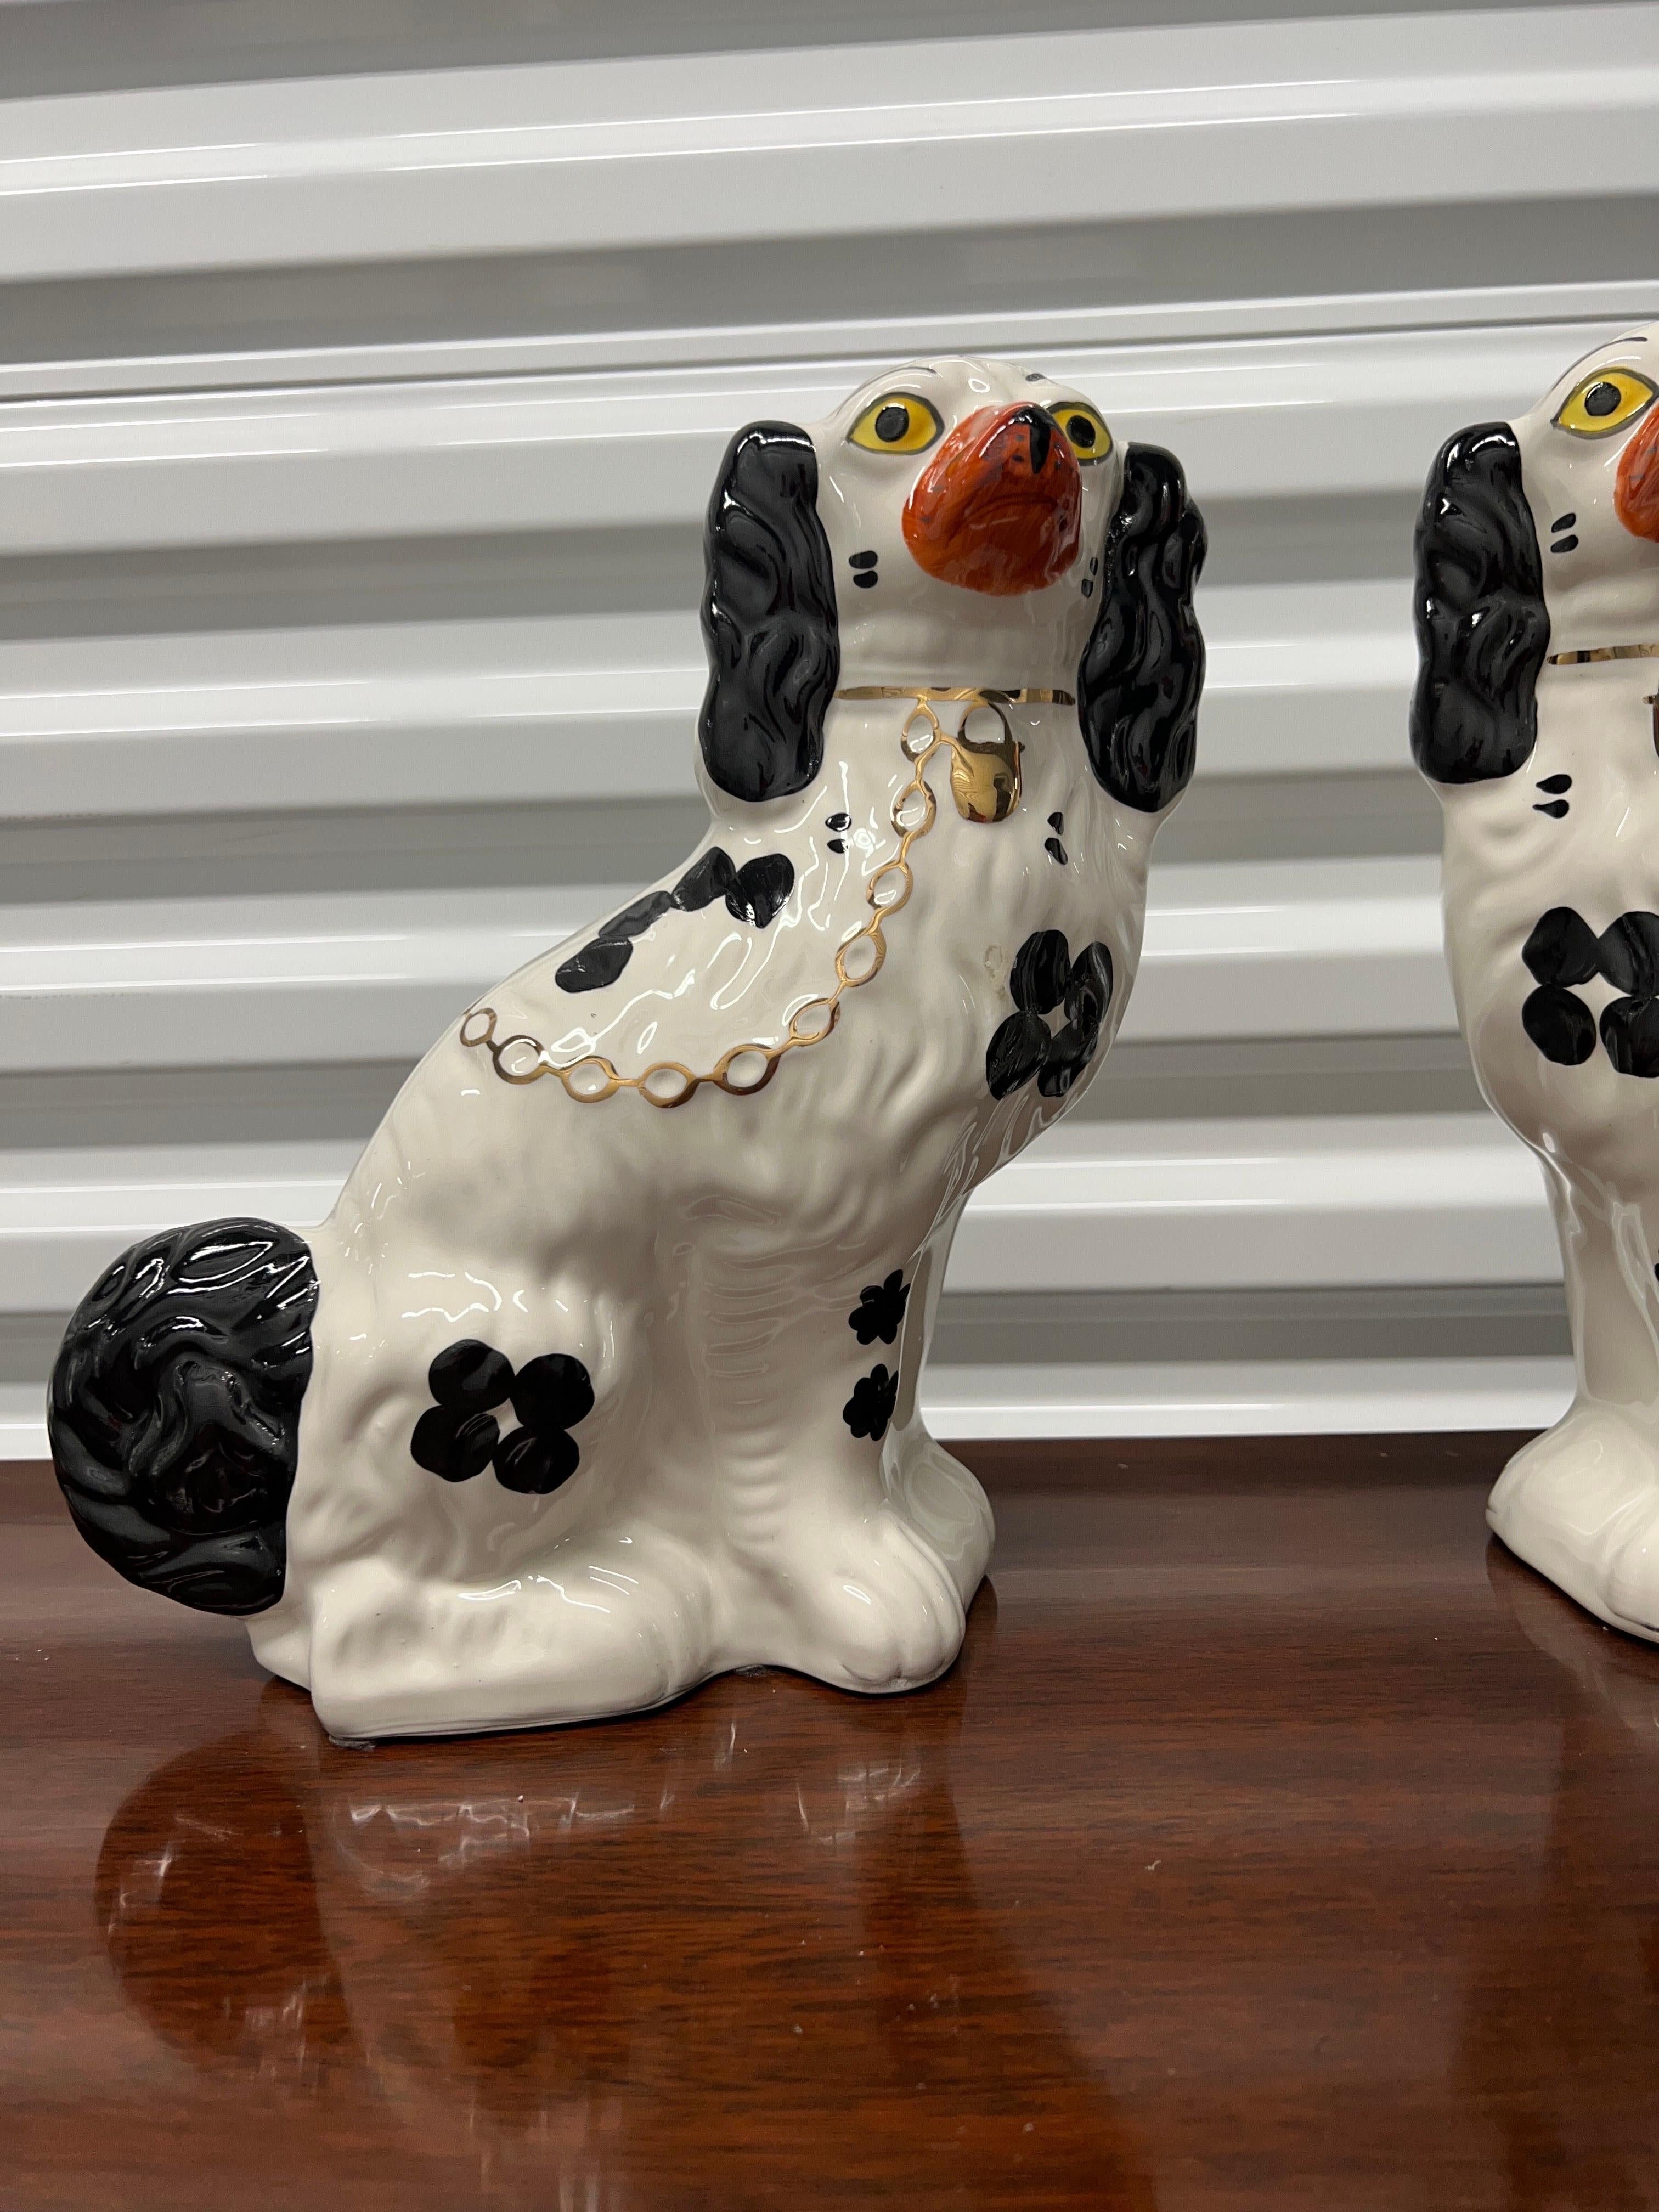 Paar Arthur Wood Staffordshire Spaniel Hunde mit weißem Körper, schwarzem Schwanz, Flecken, Ohren und traditioneller Schlüsselkette am Körper. 

Jeder Spaniel ist auf der Unterseite entsprechend gekennzeichnet.